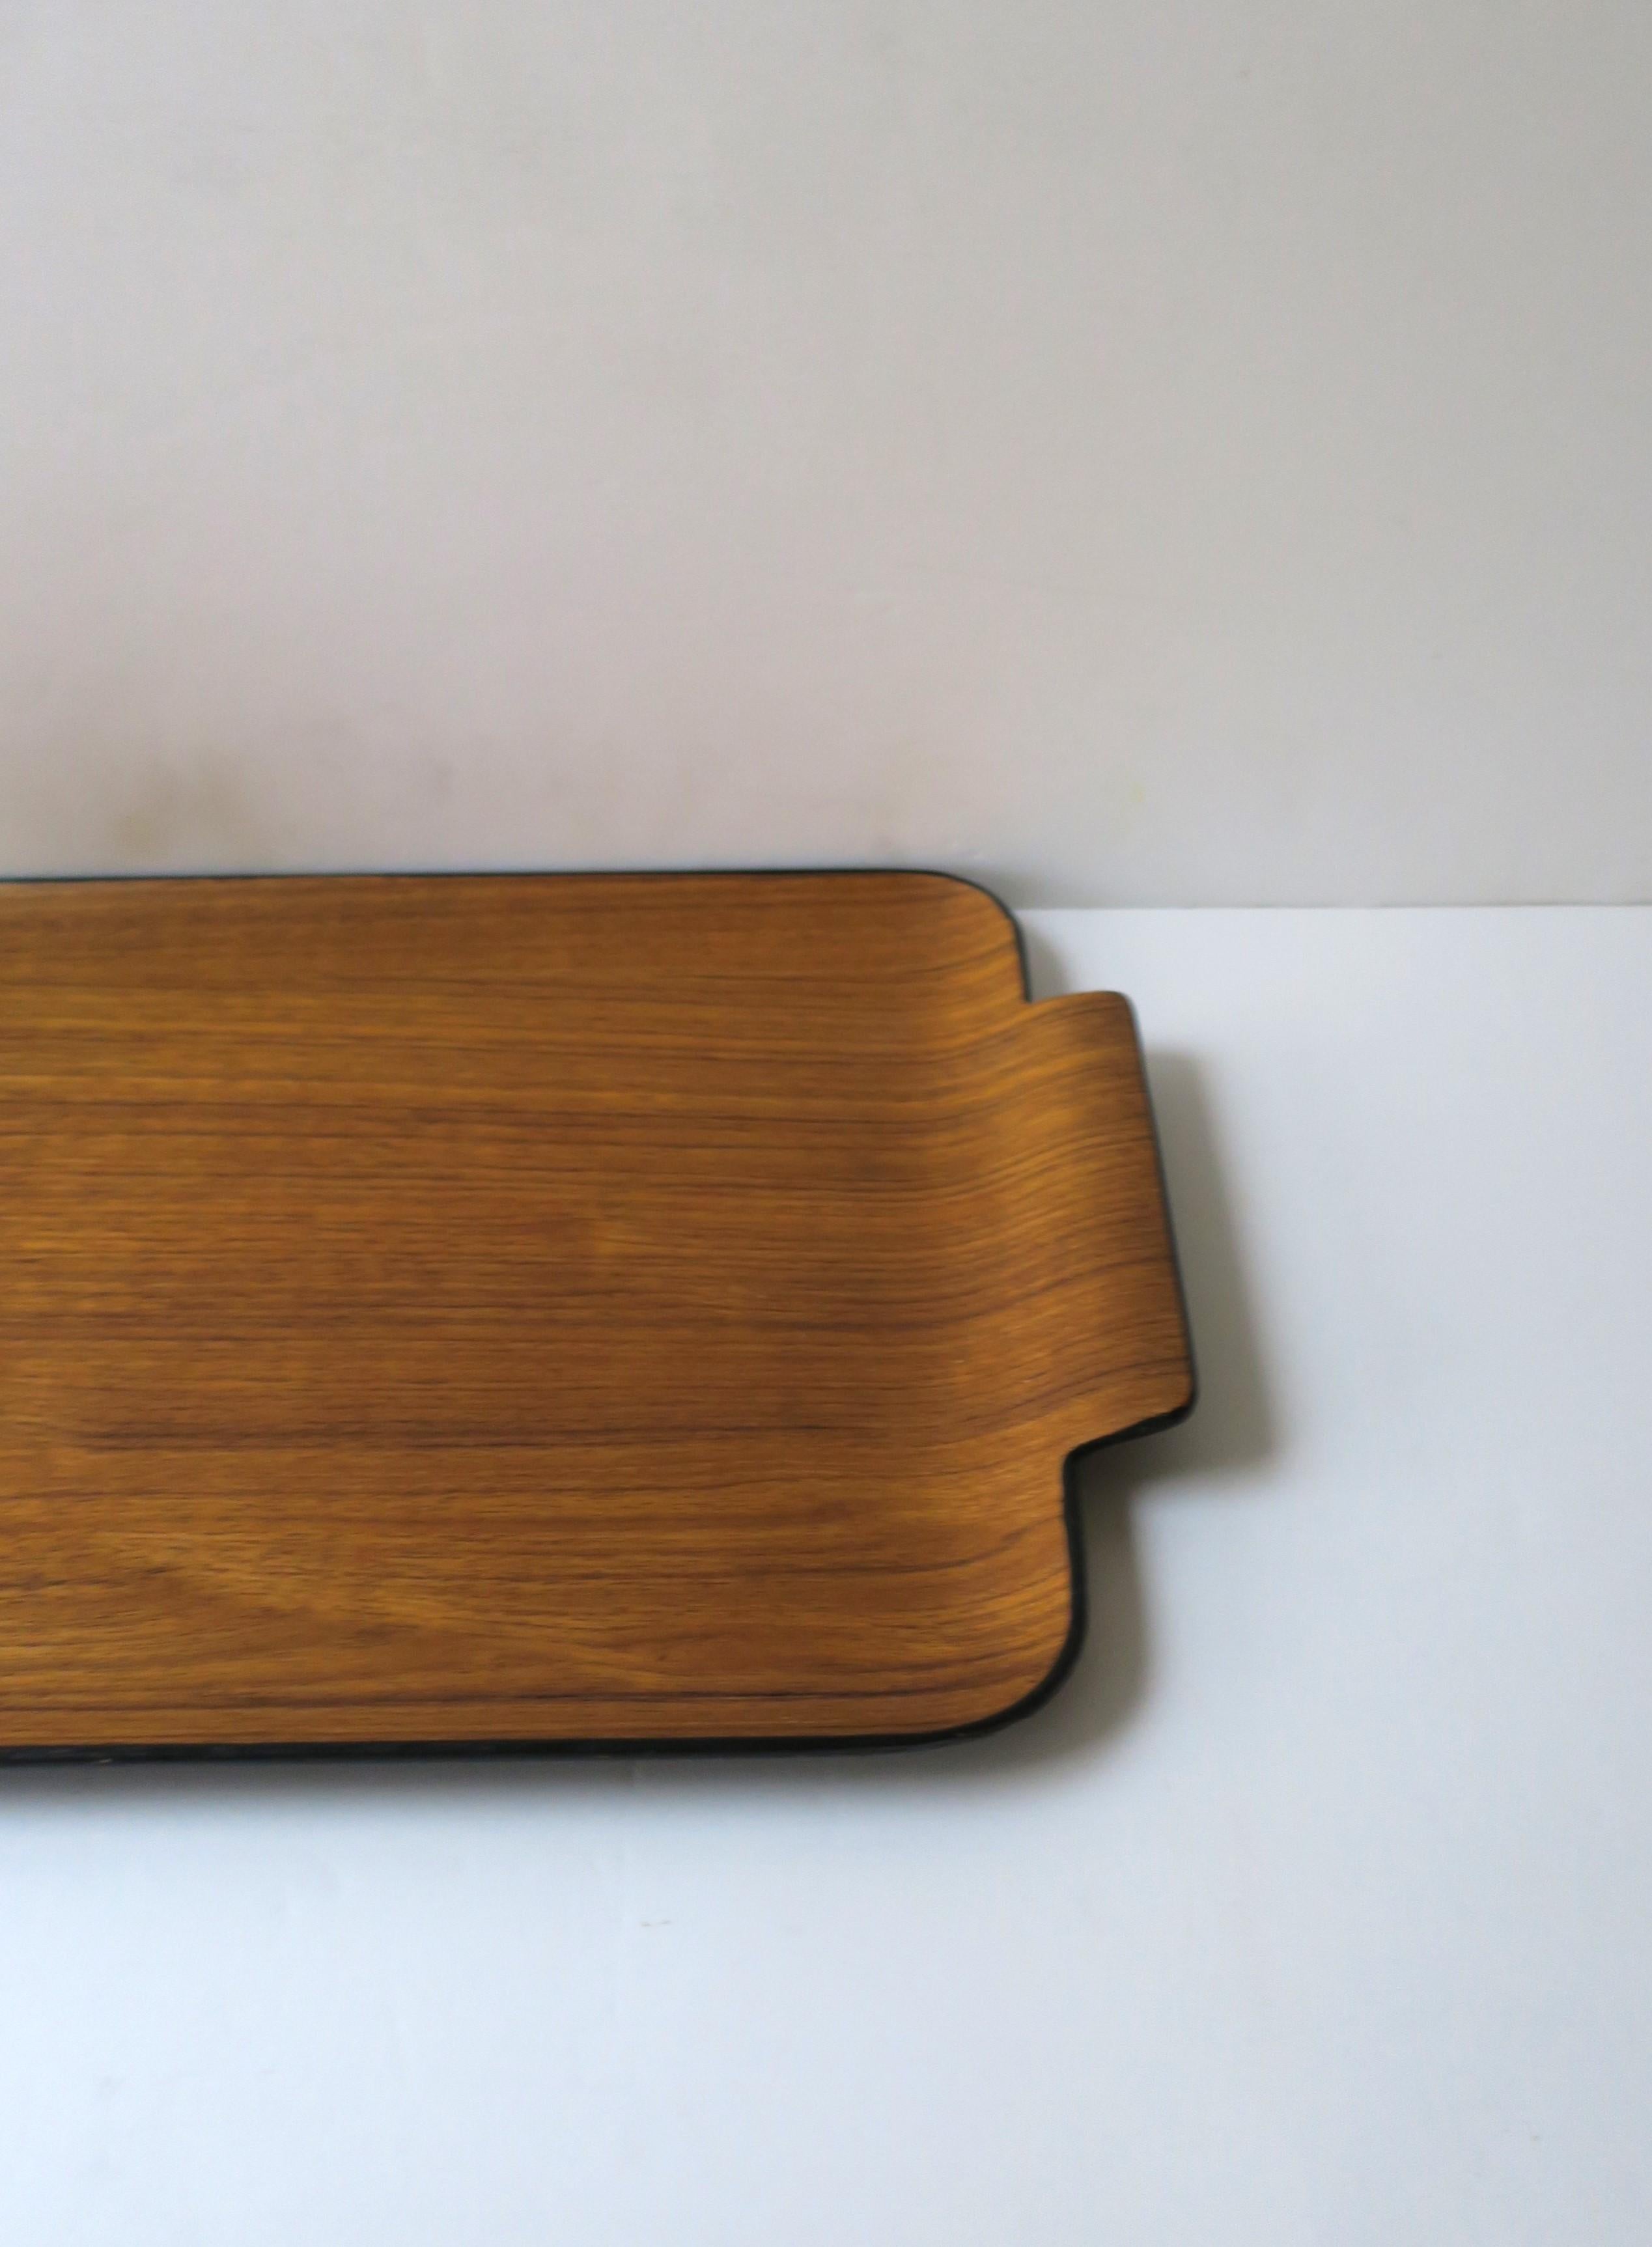 Japanese Teak Wood Tray Modern Minimalist For Sale 4